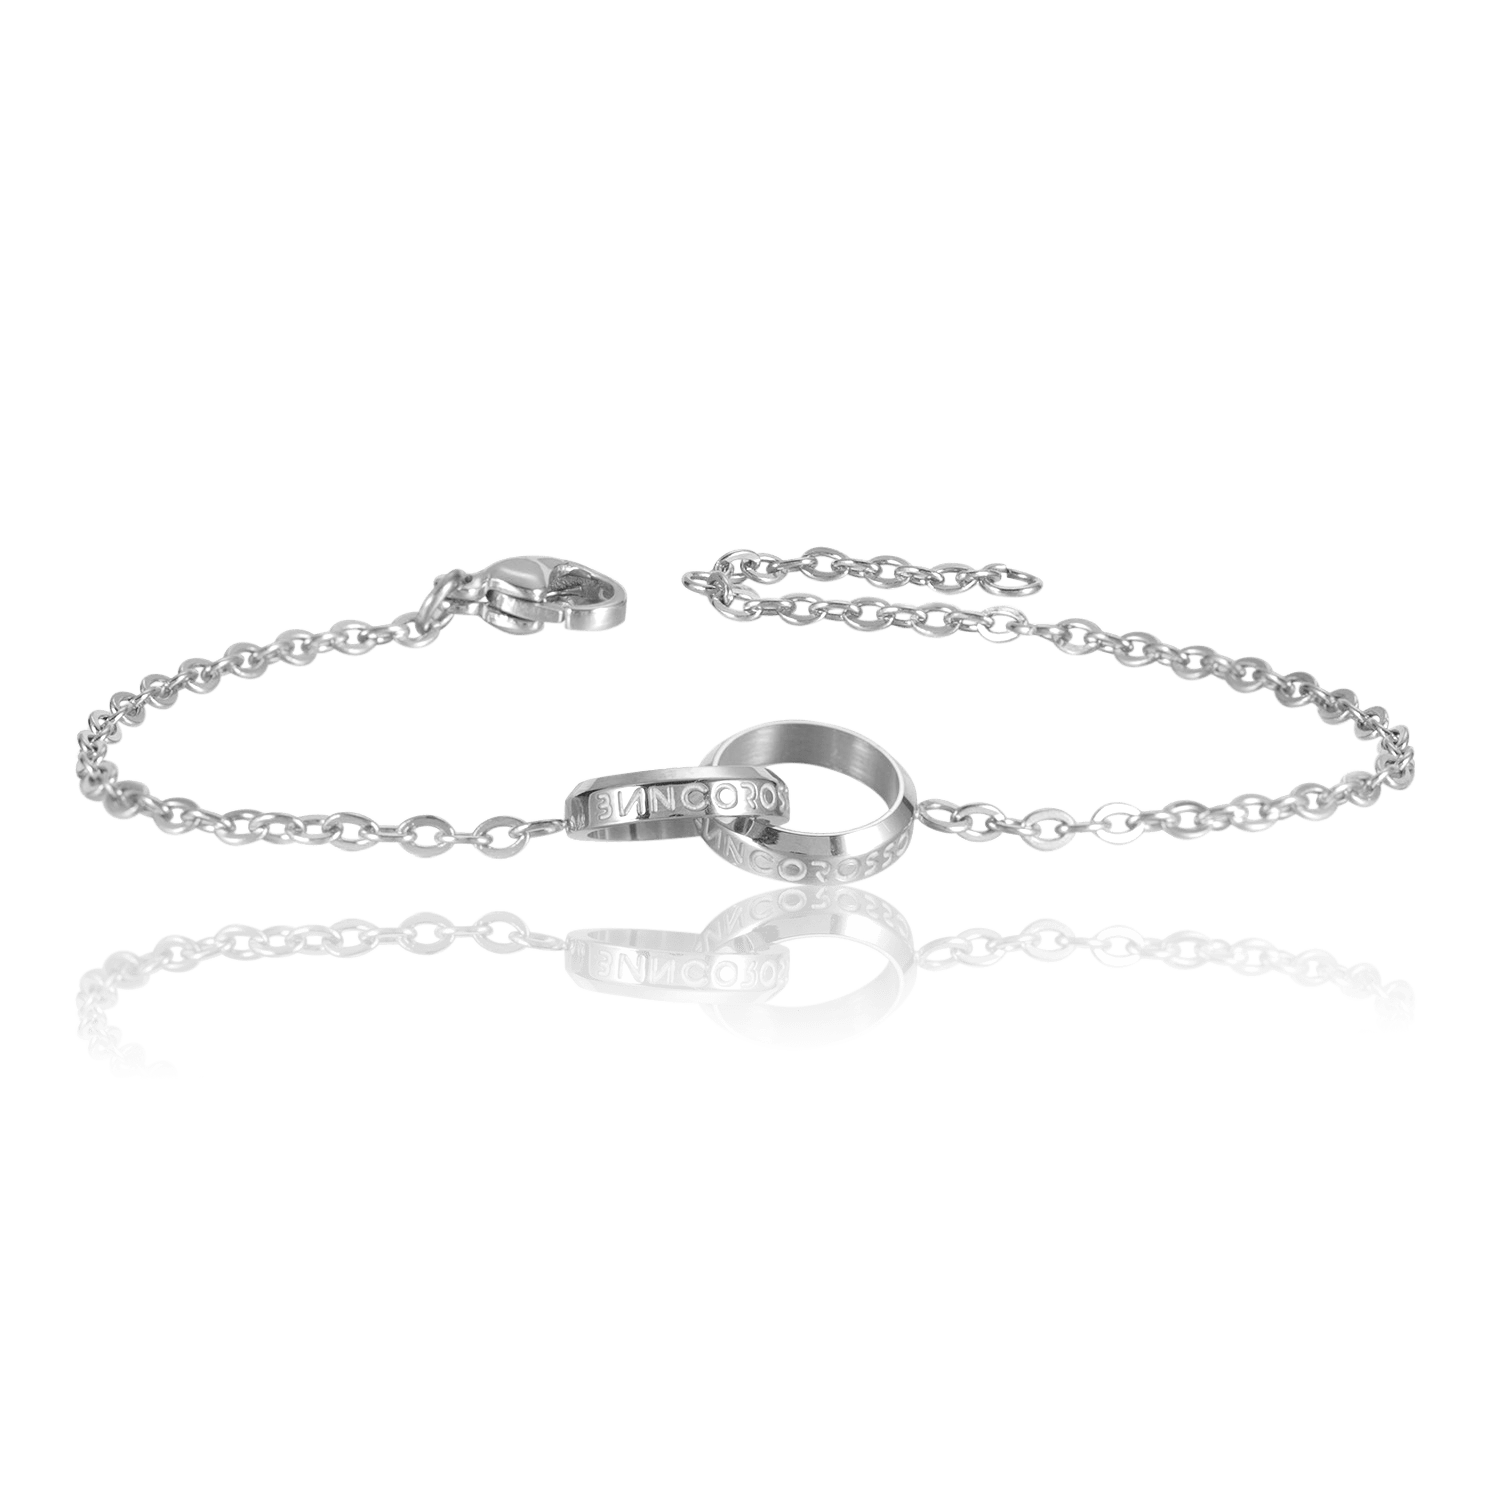 bianco rosso Bracelets To My Wife - Eternity Bracelet cyprus greece jewelry gift free shipping europe worldwide